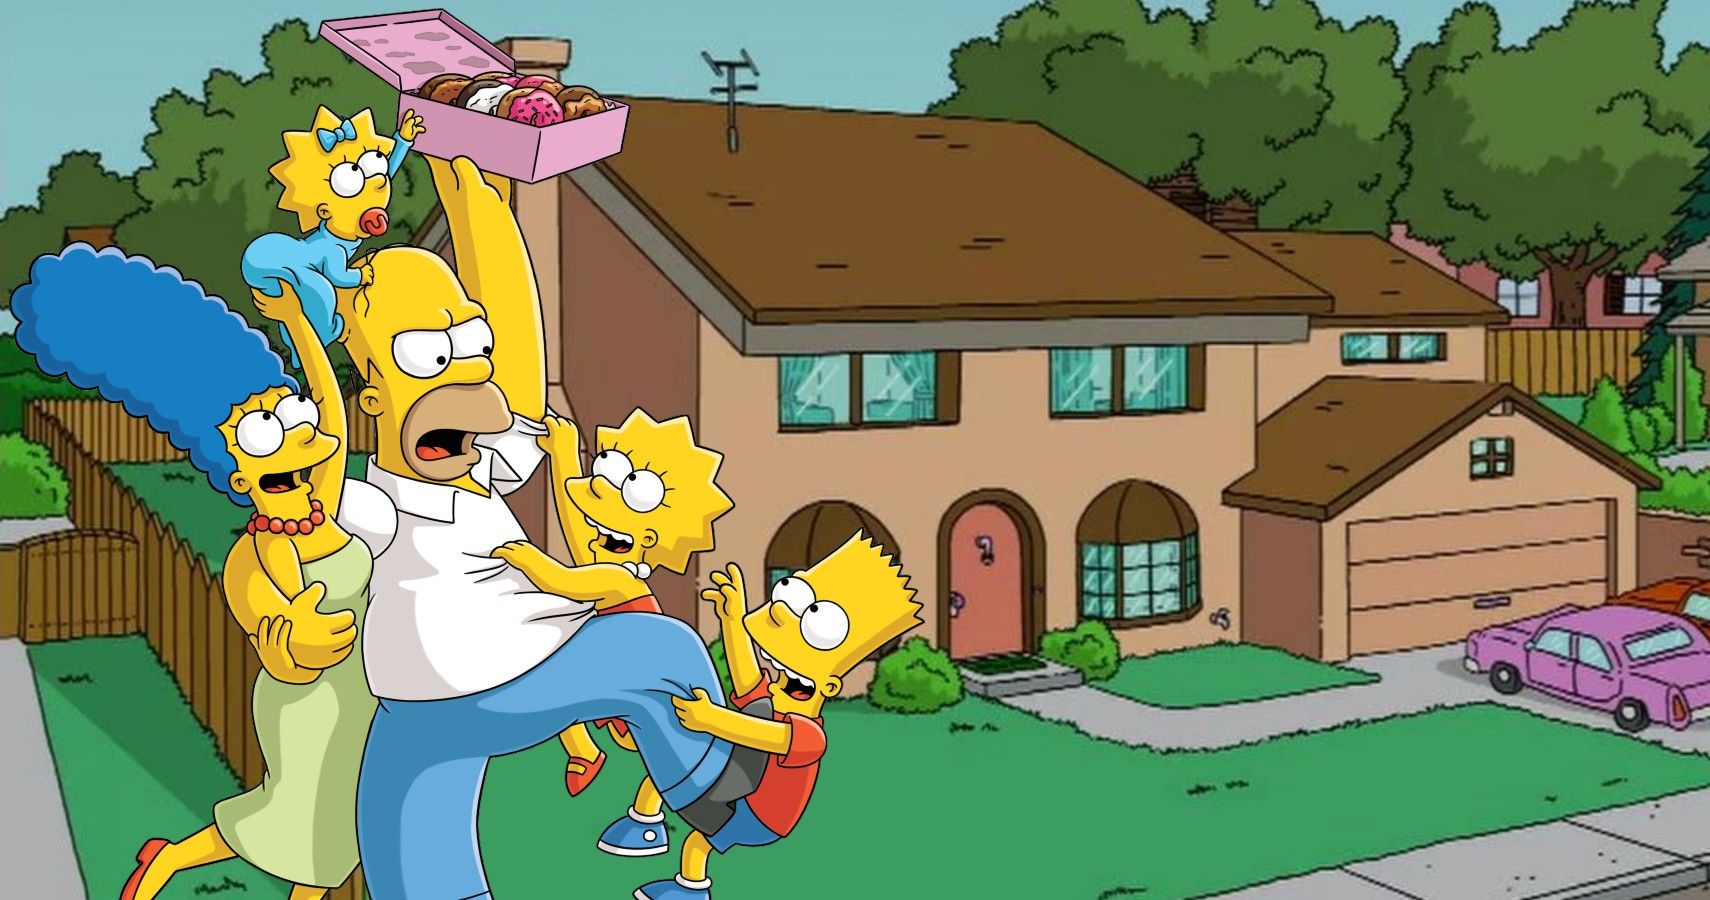 preposition Mentor amplitude The Simpsons: 10 Hidden Details About The Simp...